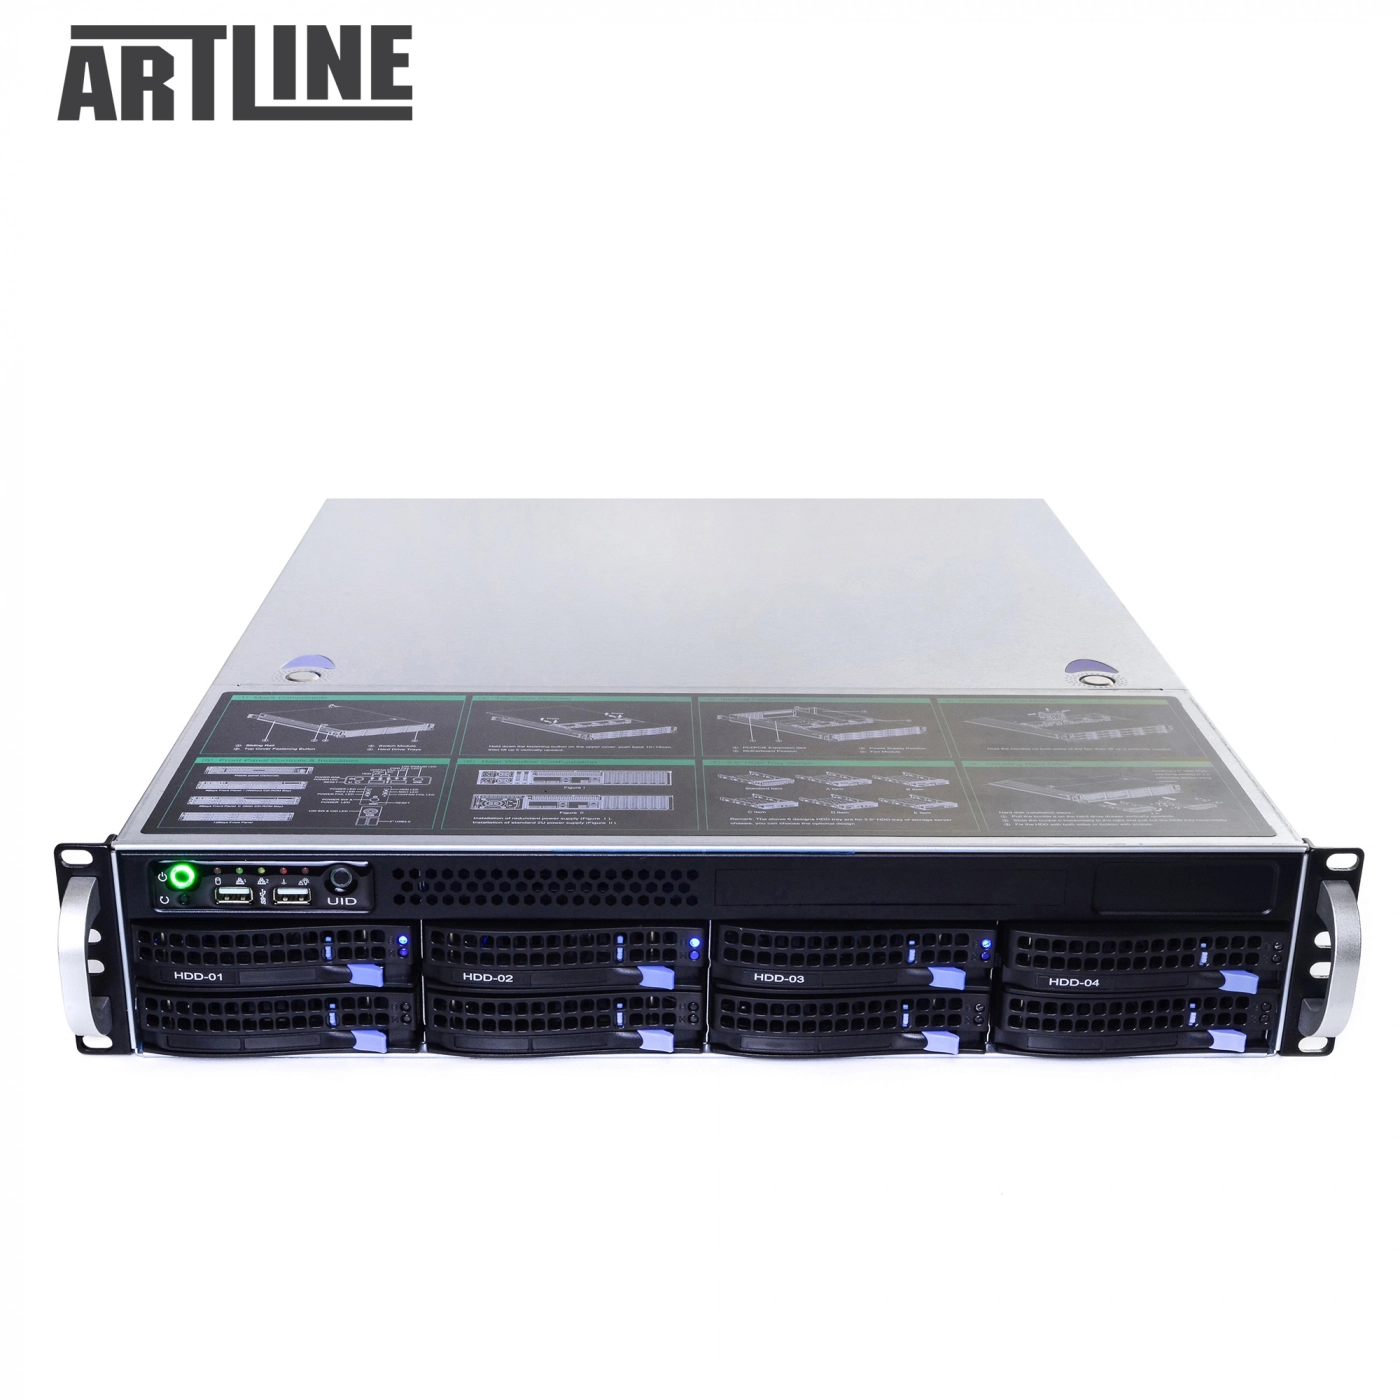 Купить Сервер ARTLINE Business R35v30 - фото 10